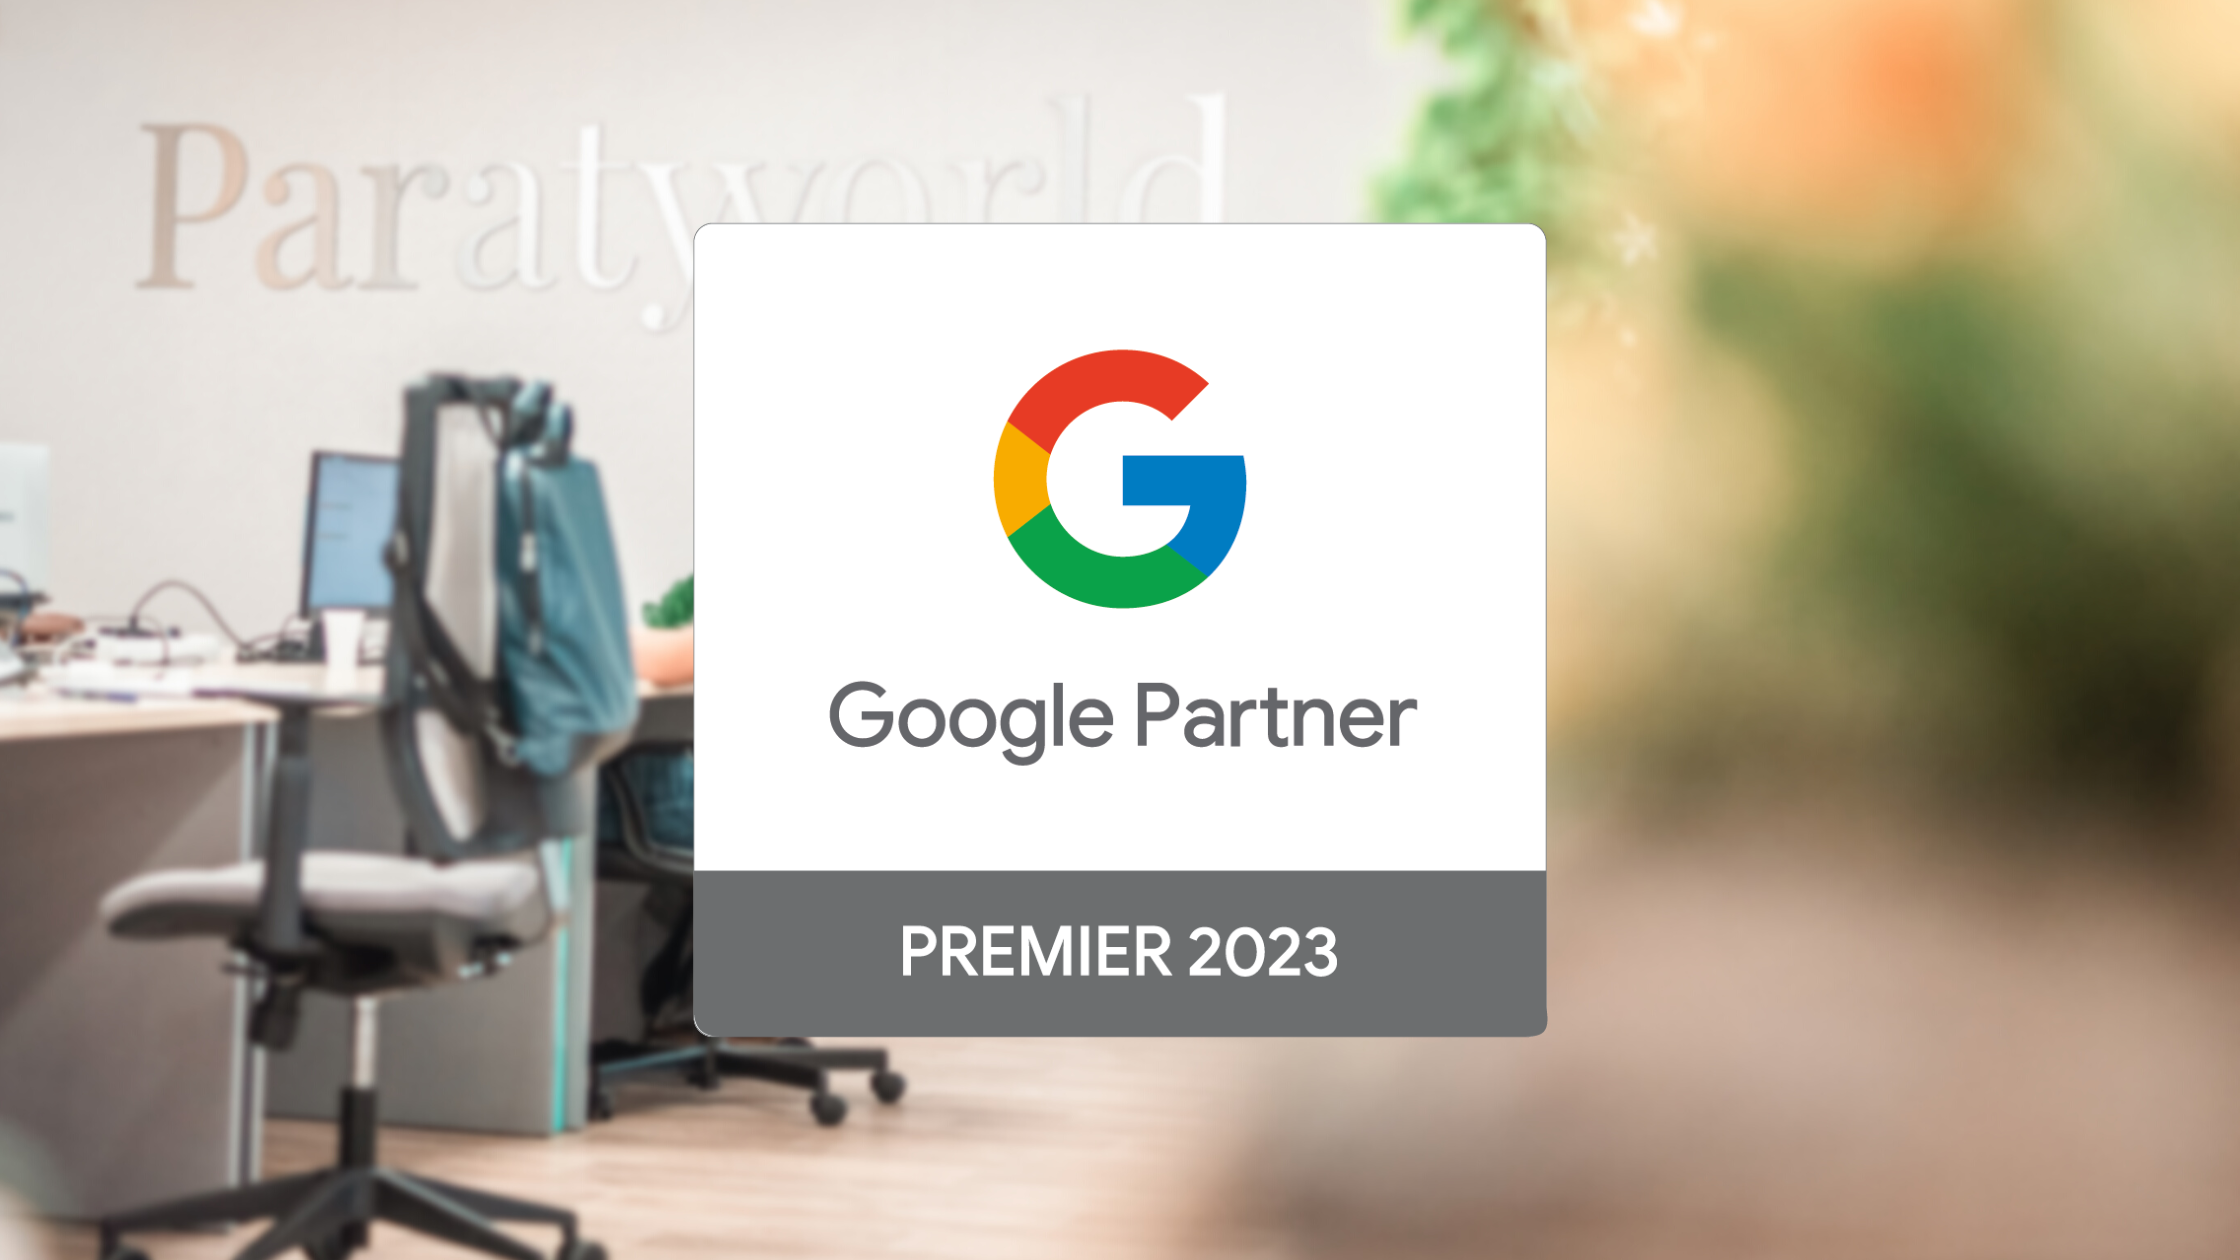 Paraty Tech gets Google Partner Premier 2023 recognition